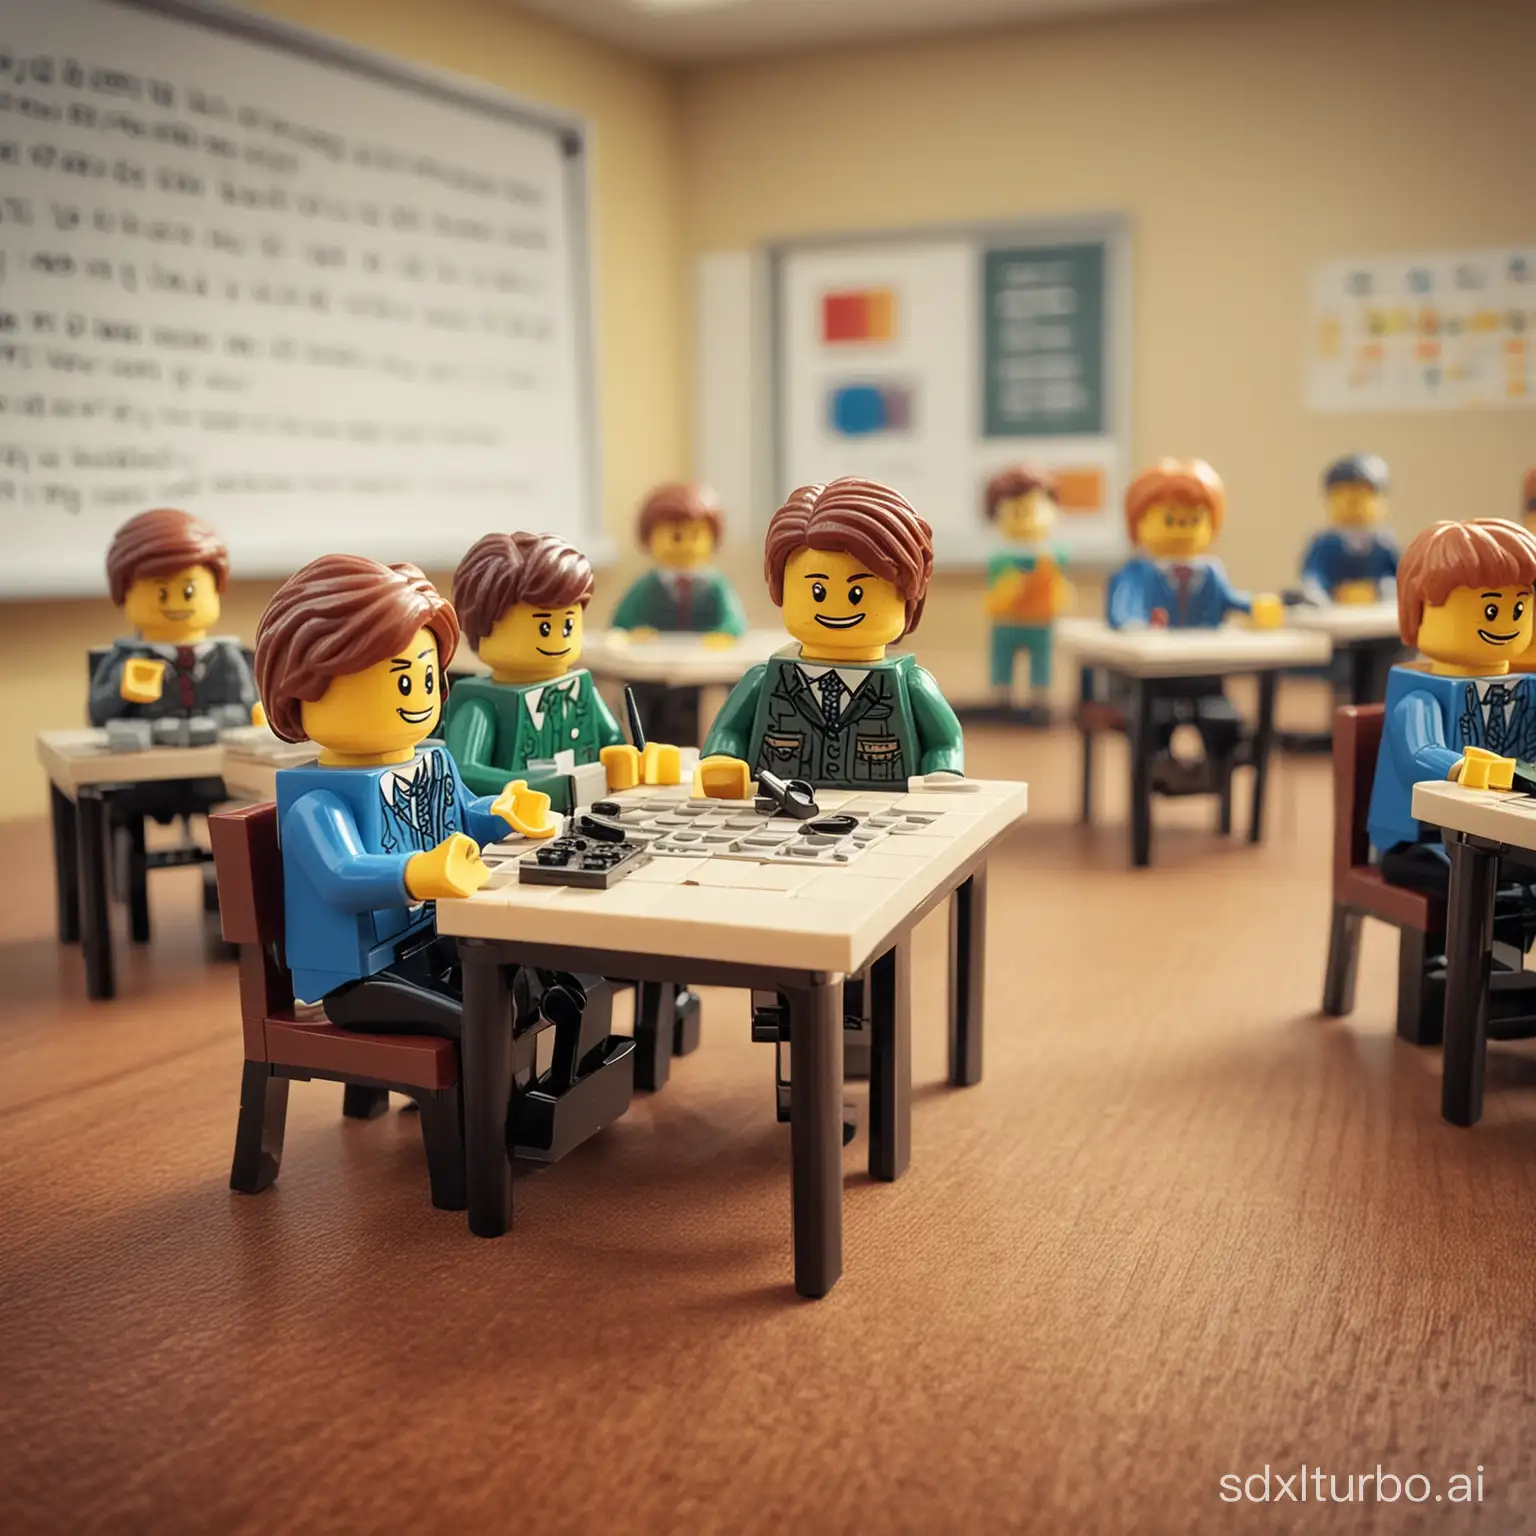 Legofigurer i en klassrumssituation. Lyckliga över att få lära sig matematik.